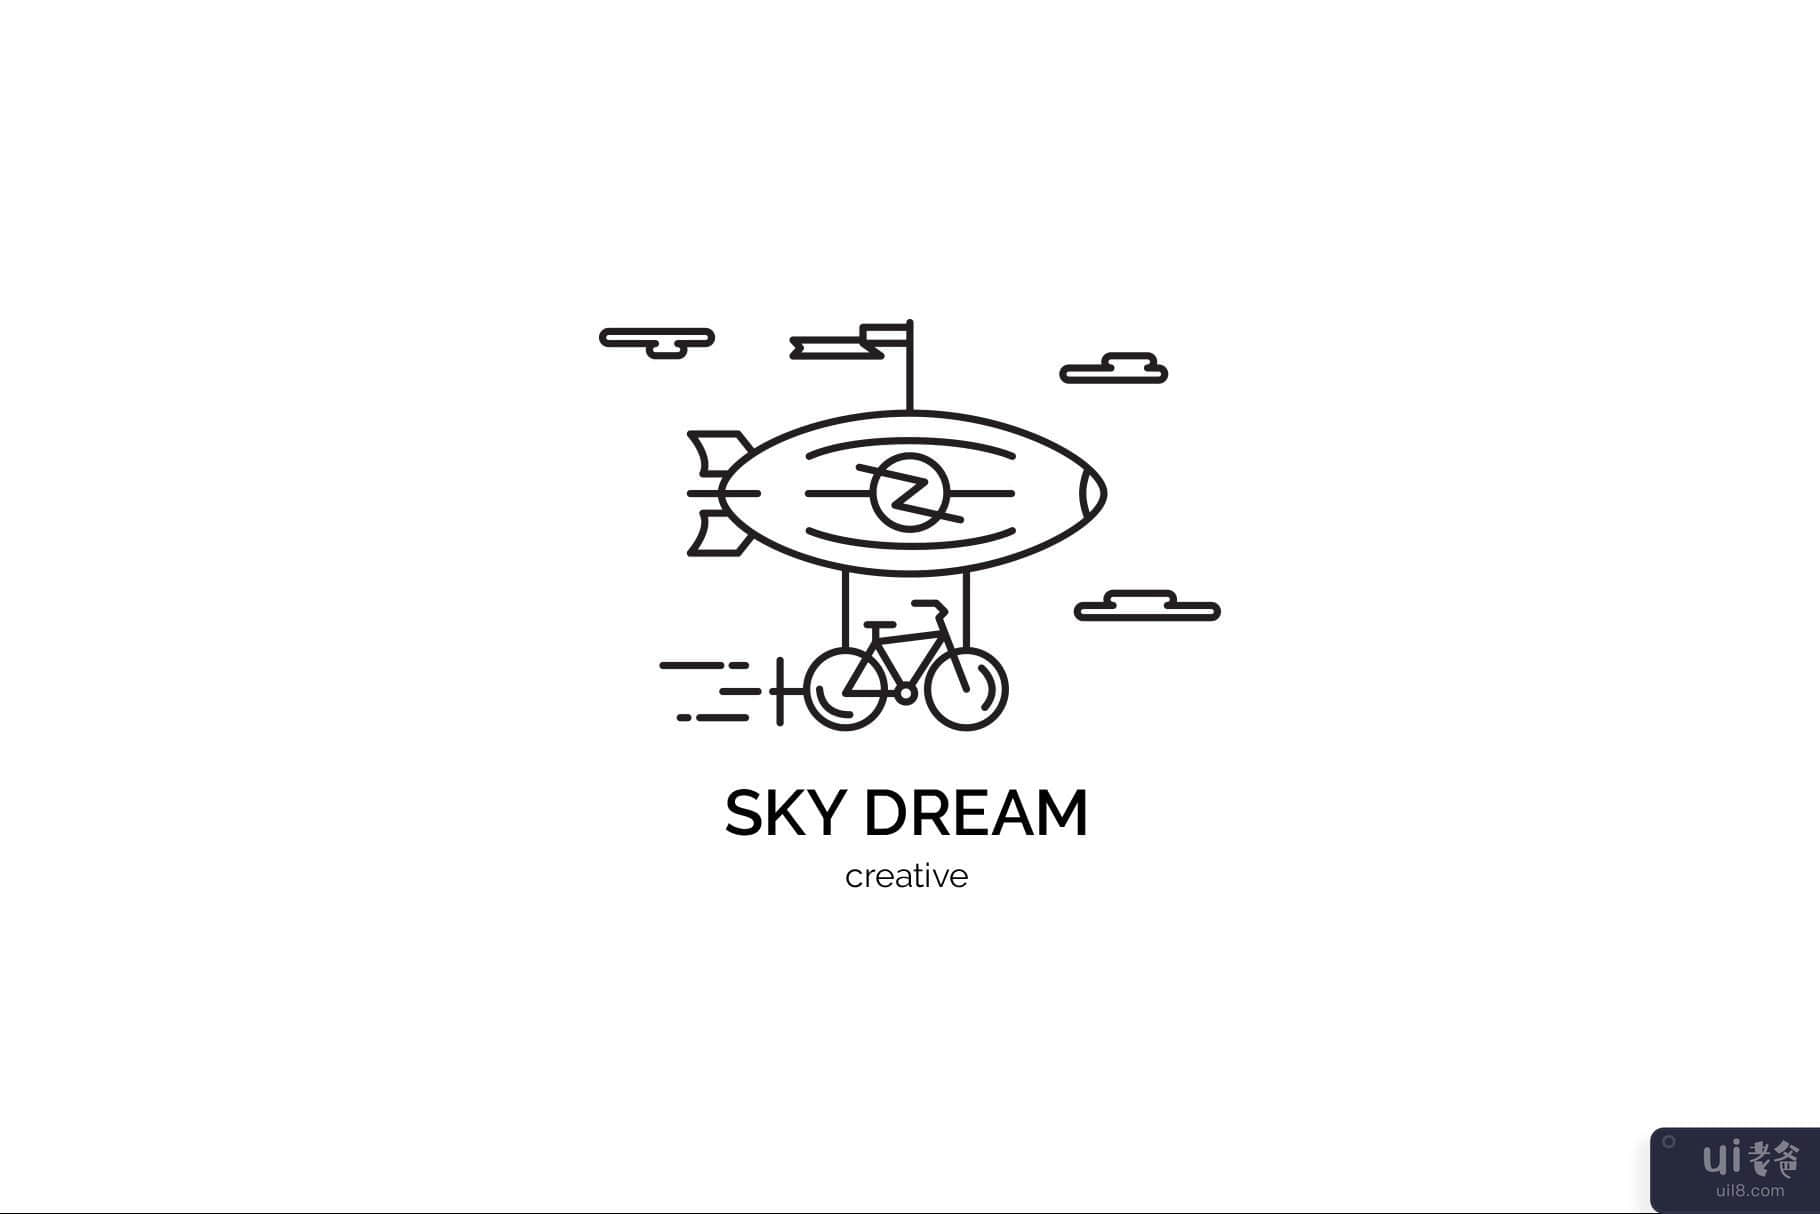 天空之梦(Sky Dream)插图5